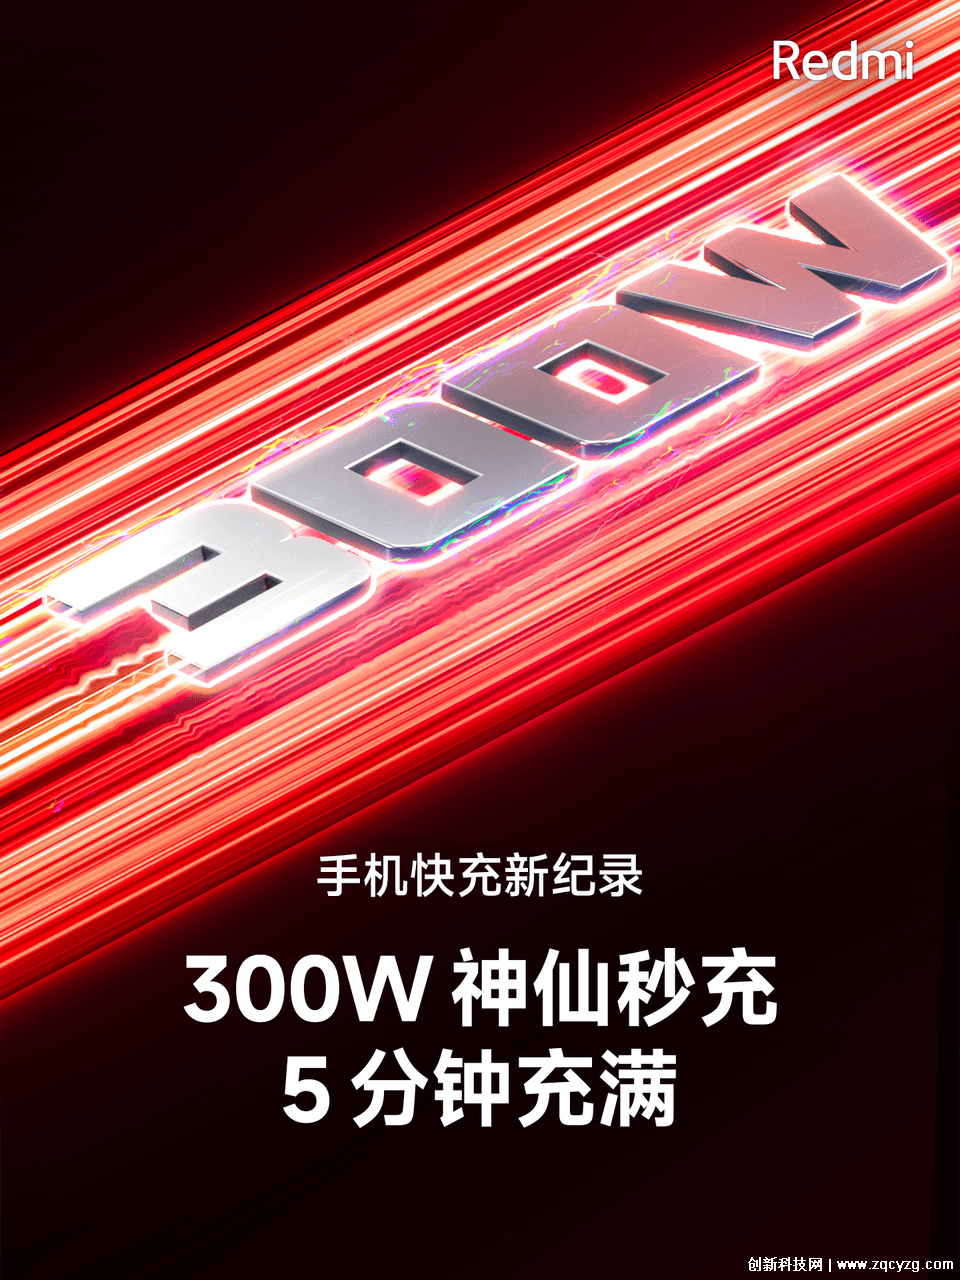 红米宣布300W快充到来，充满电仅需5分钟刷新手机充电速率